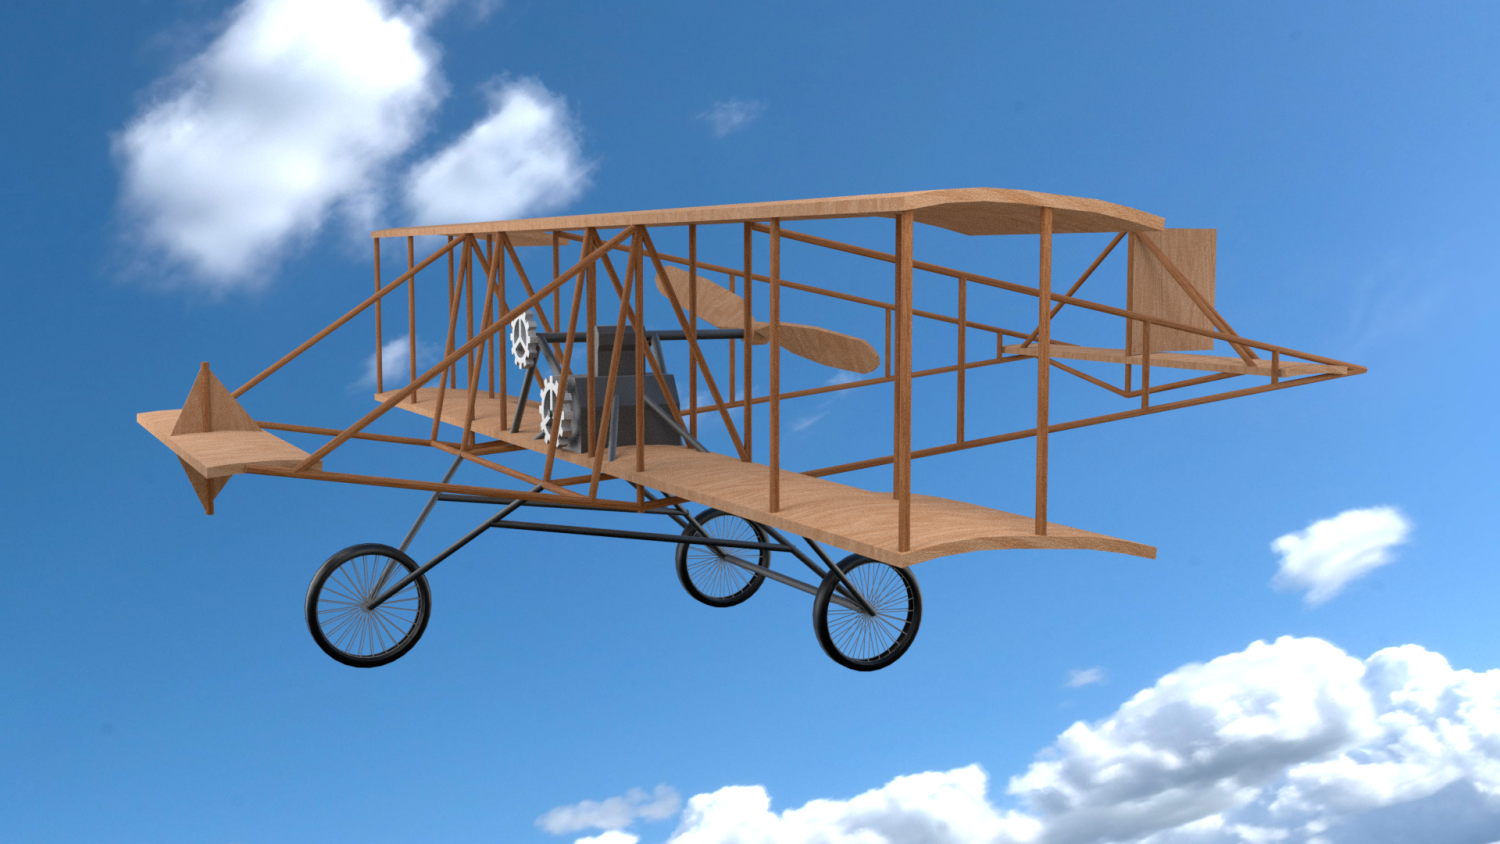 3D Old Plane model